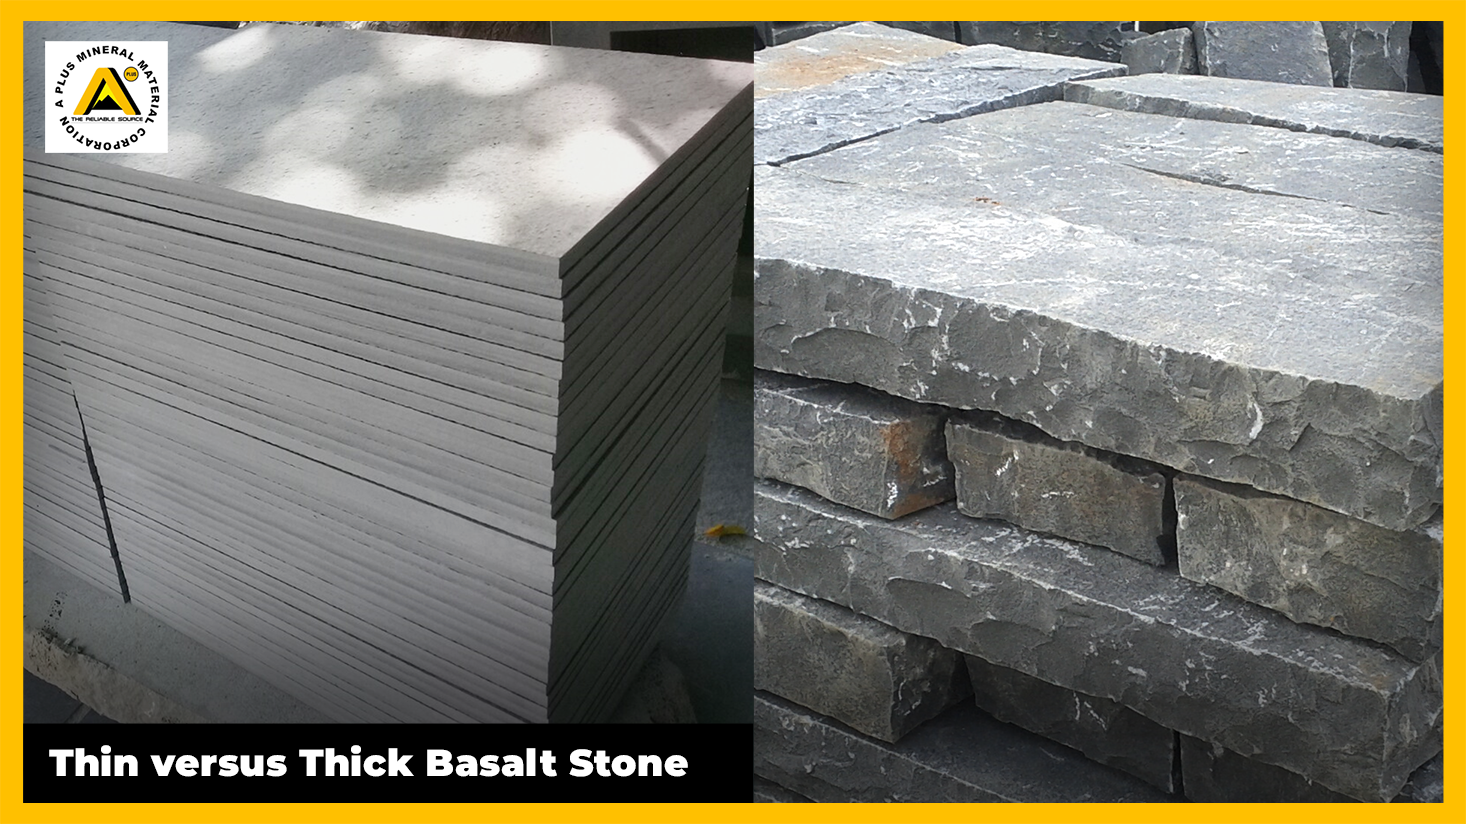 Thin versus Thick Basalt Stone